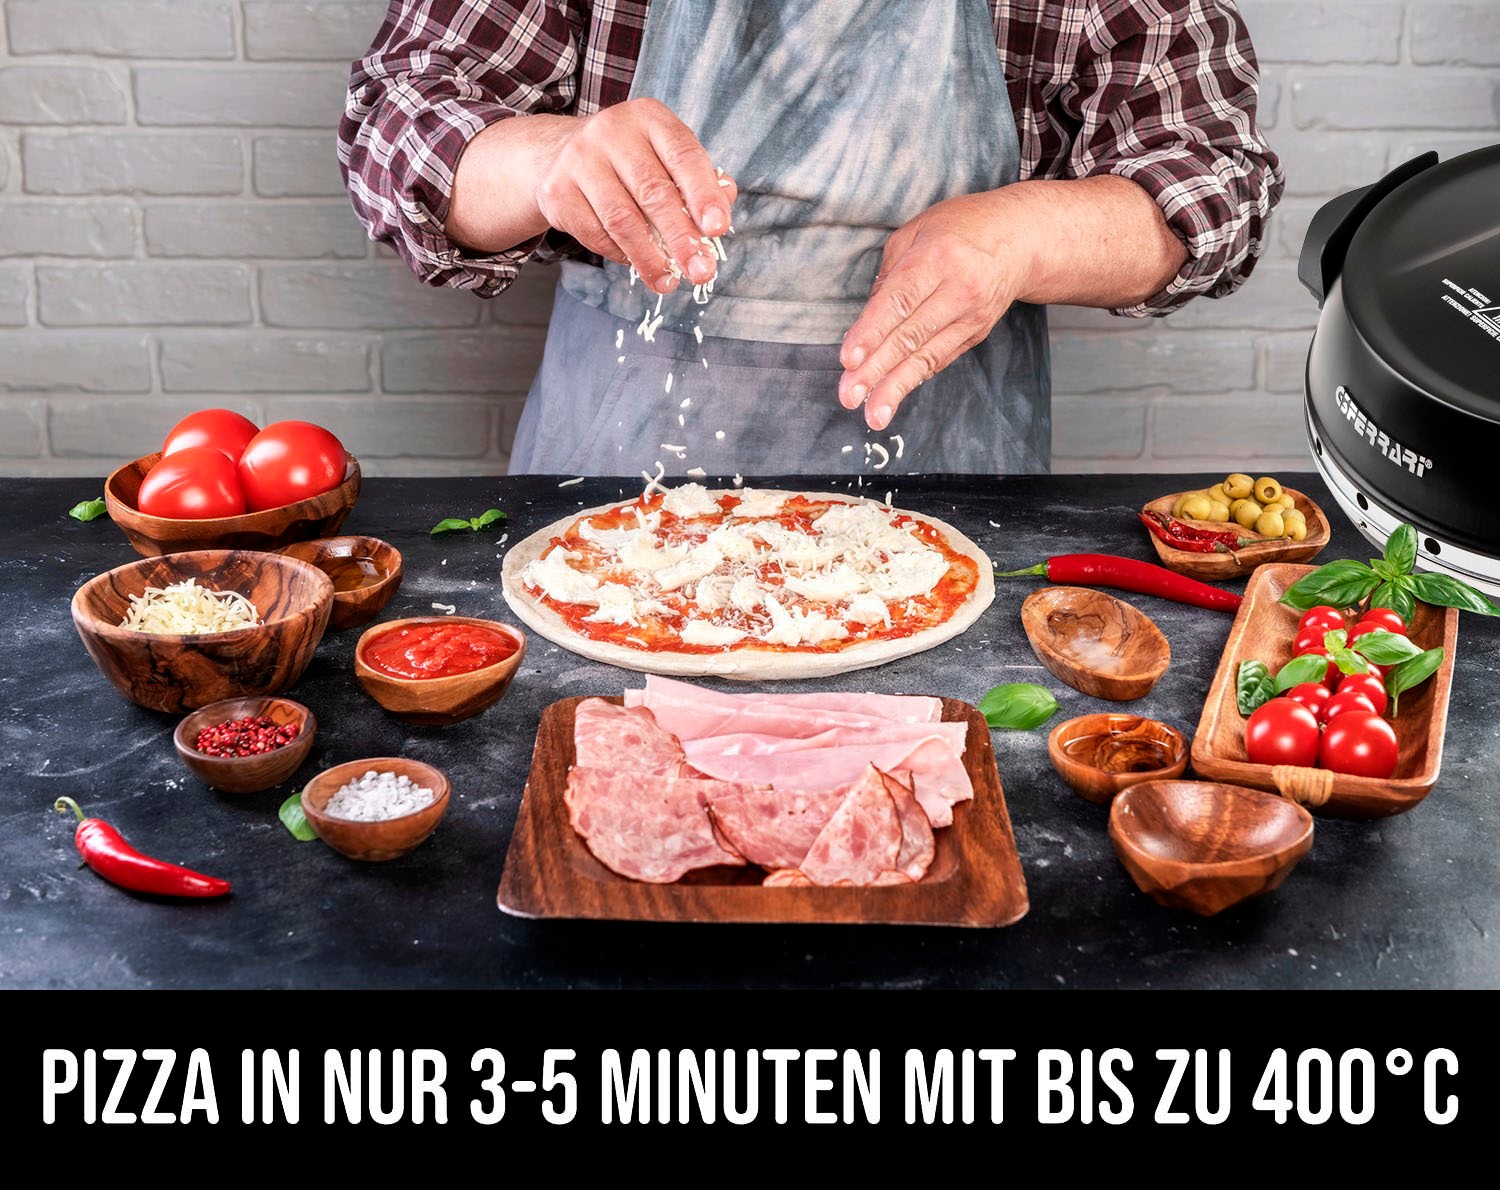 G3Ferrari Pizzaofen »Napoletana G1003210 schwarz«, bis 400 Grad mit 2 feuerfesten Pizzasteinen